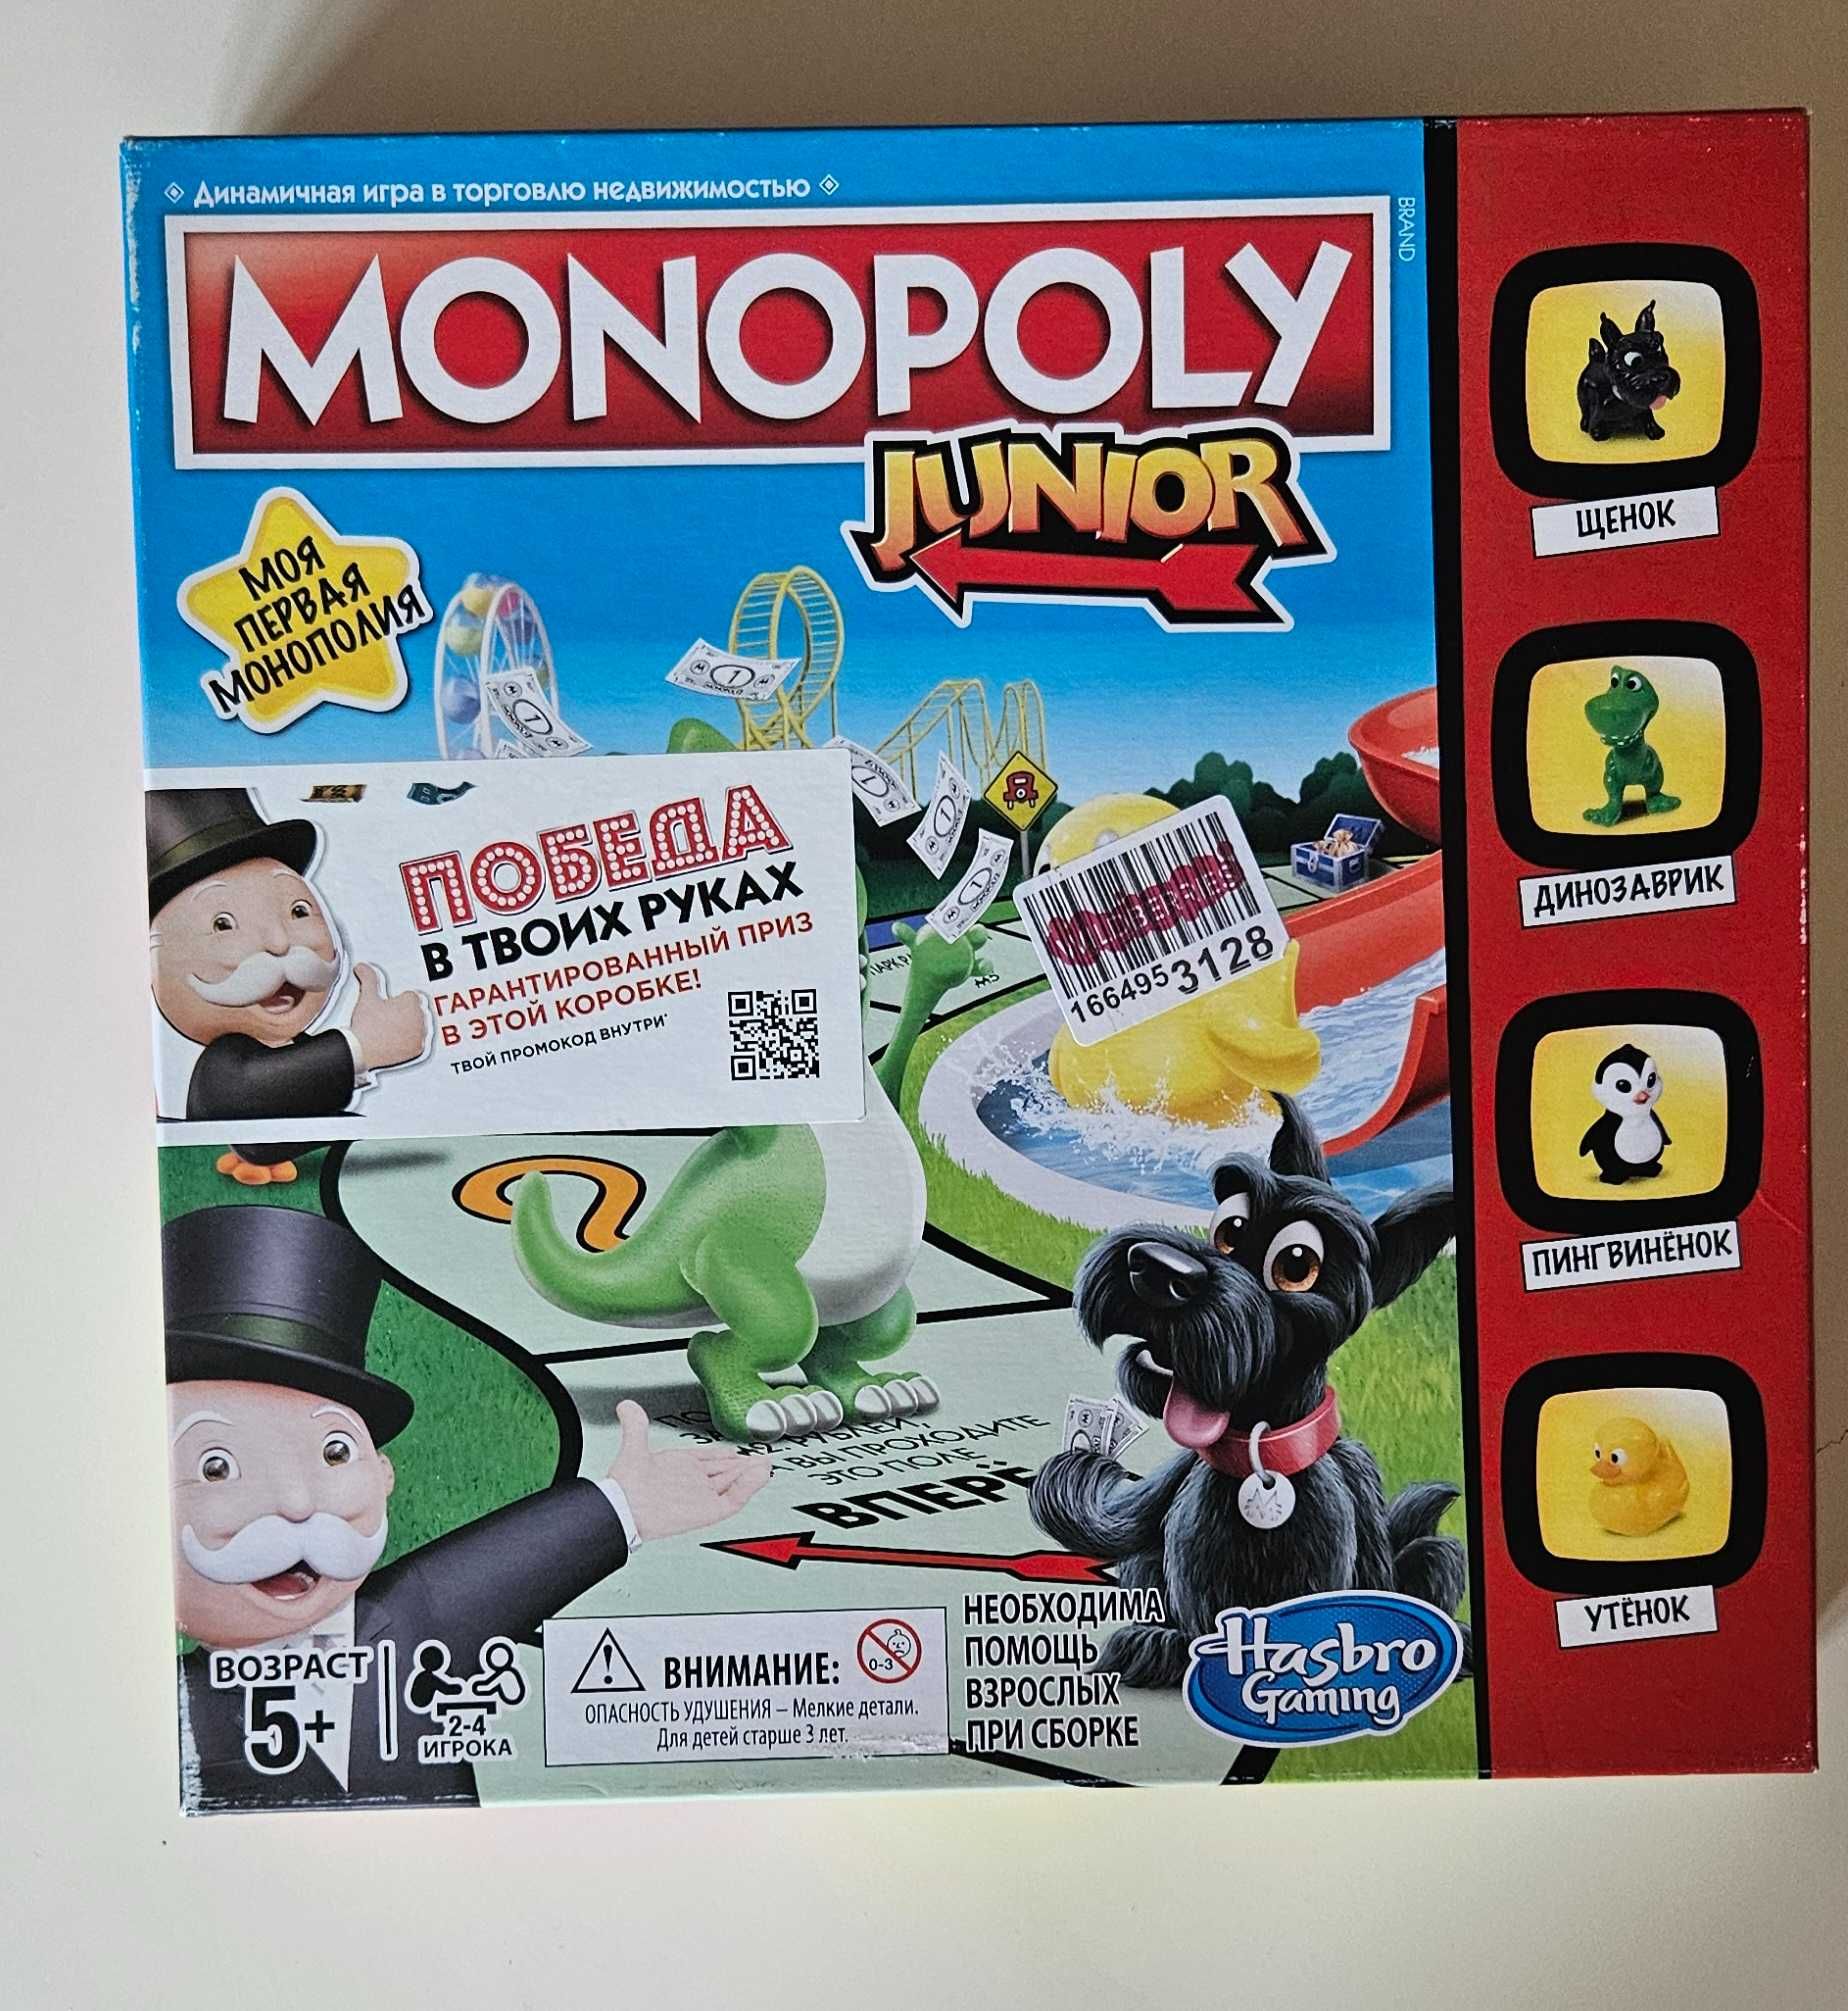 Монополія джуніур monopoly